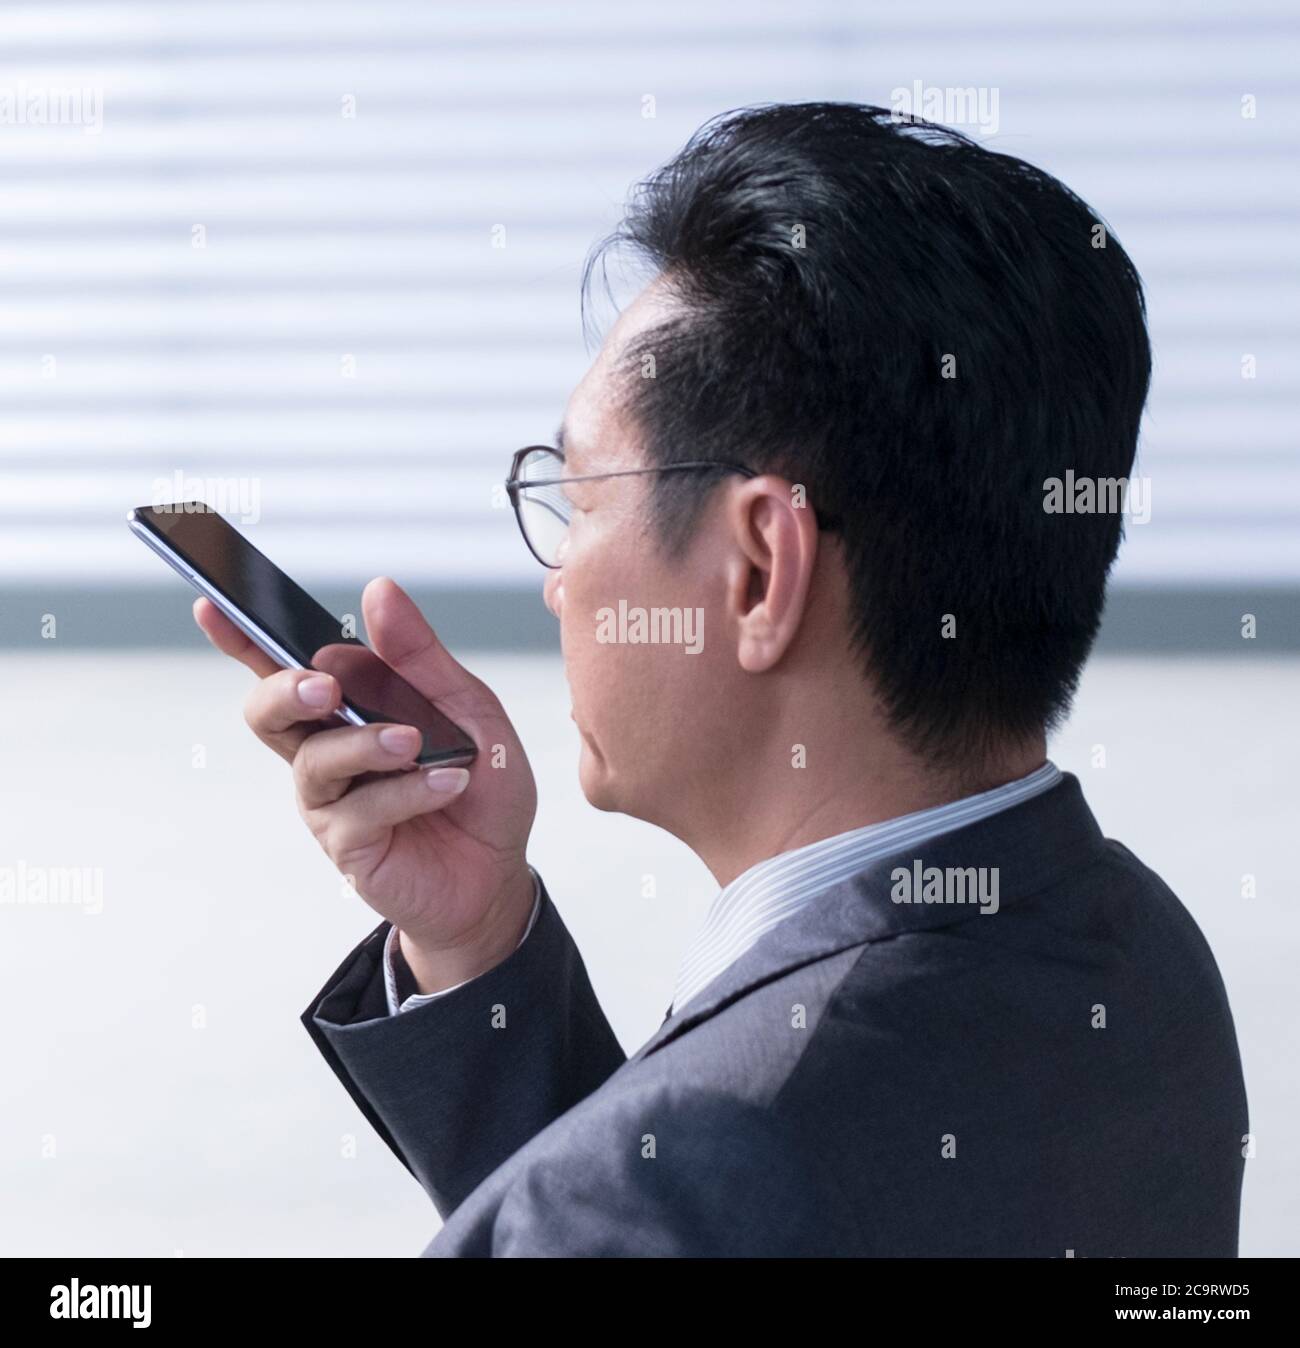 Homme d'affaires chinois utilisant un téléphone portable pour laisser un message vocal. Gros plan, vue de la tête. Banque D'Images